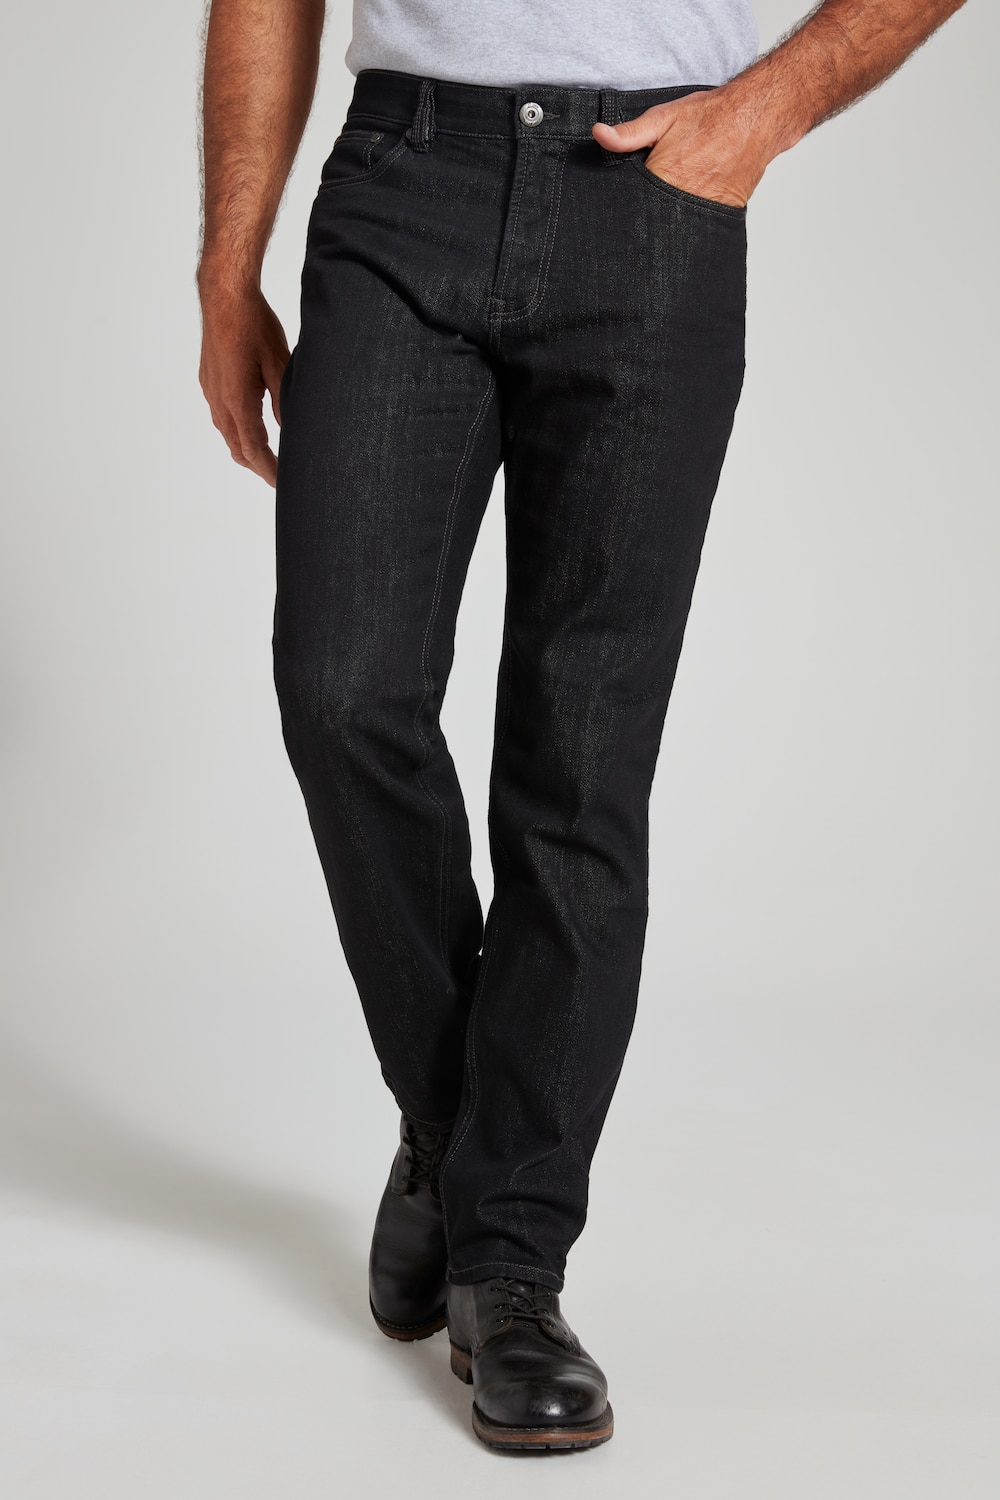 Grote Maten jeans regular fit, Heren, zwart, Maat: 66, Katoen, JP1880